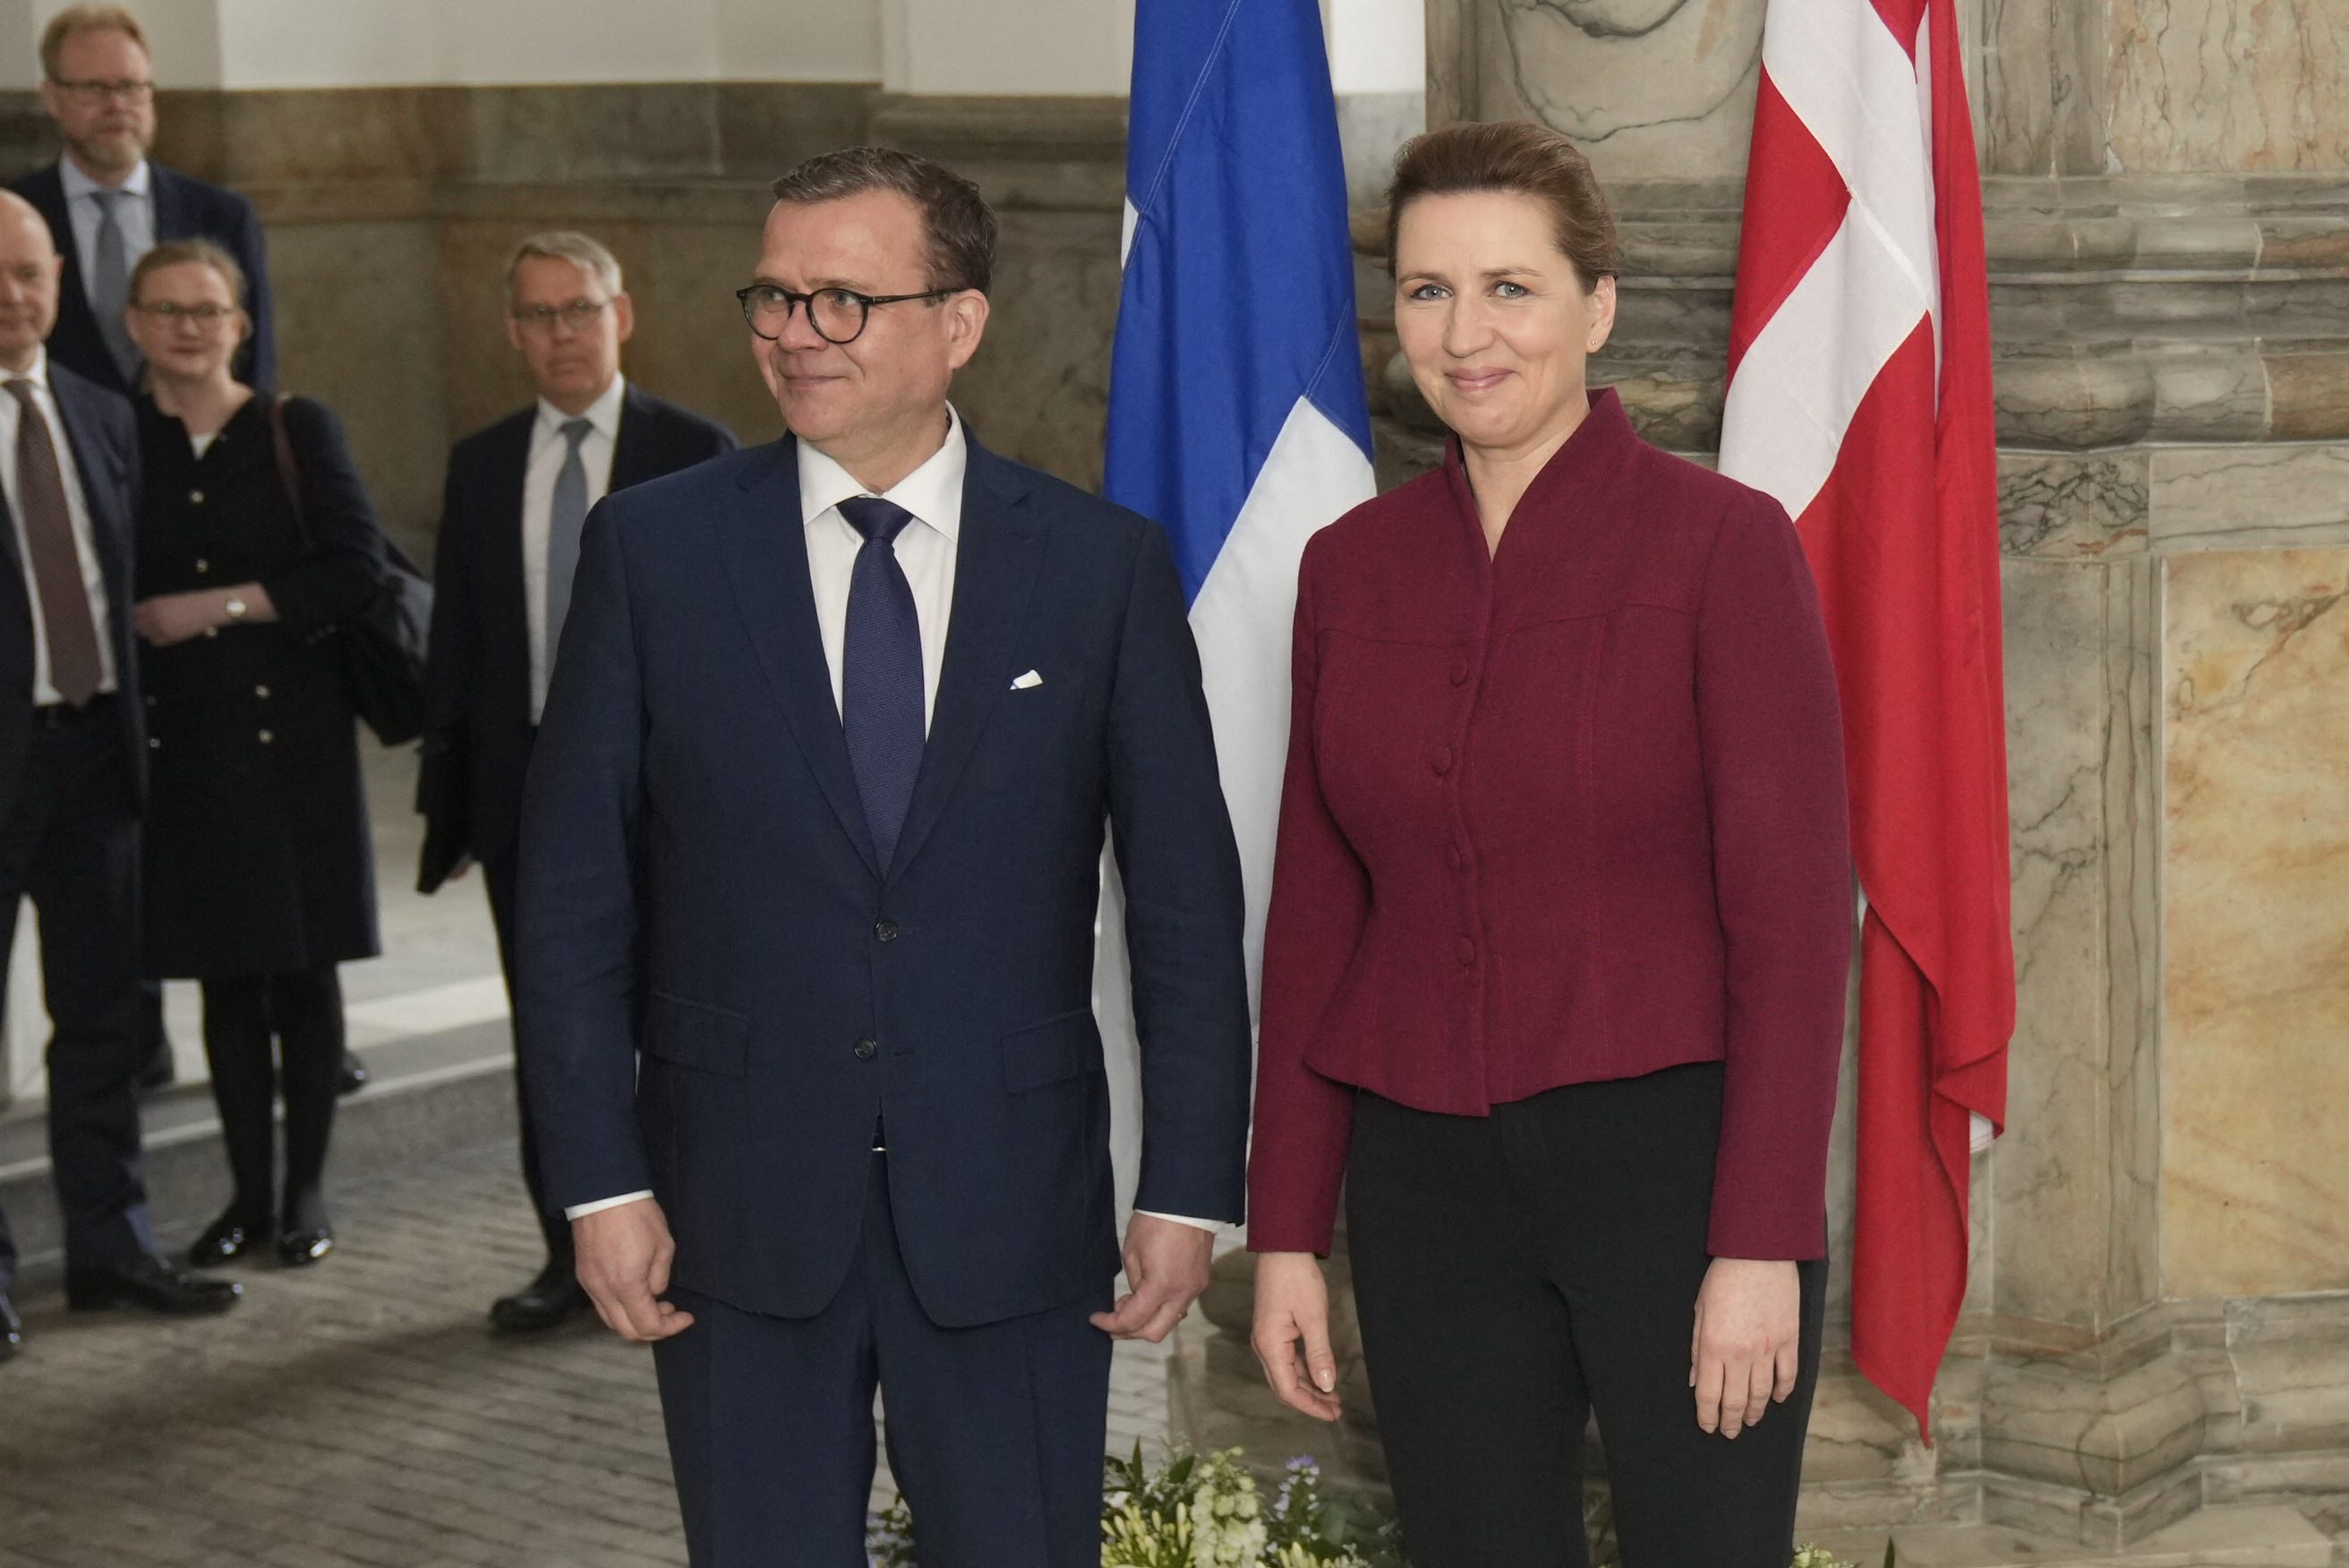 suomen ja tanskan pääministerit kiirehtivät euroopan puolustusteollisuuden vahvistamista